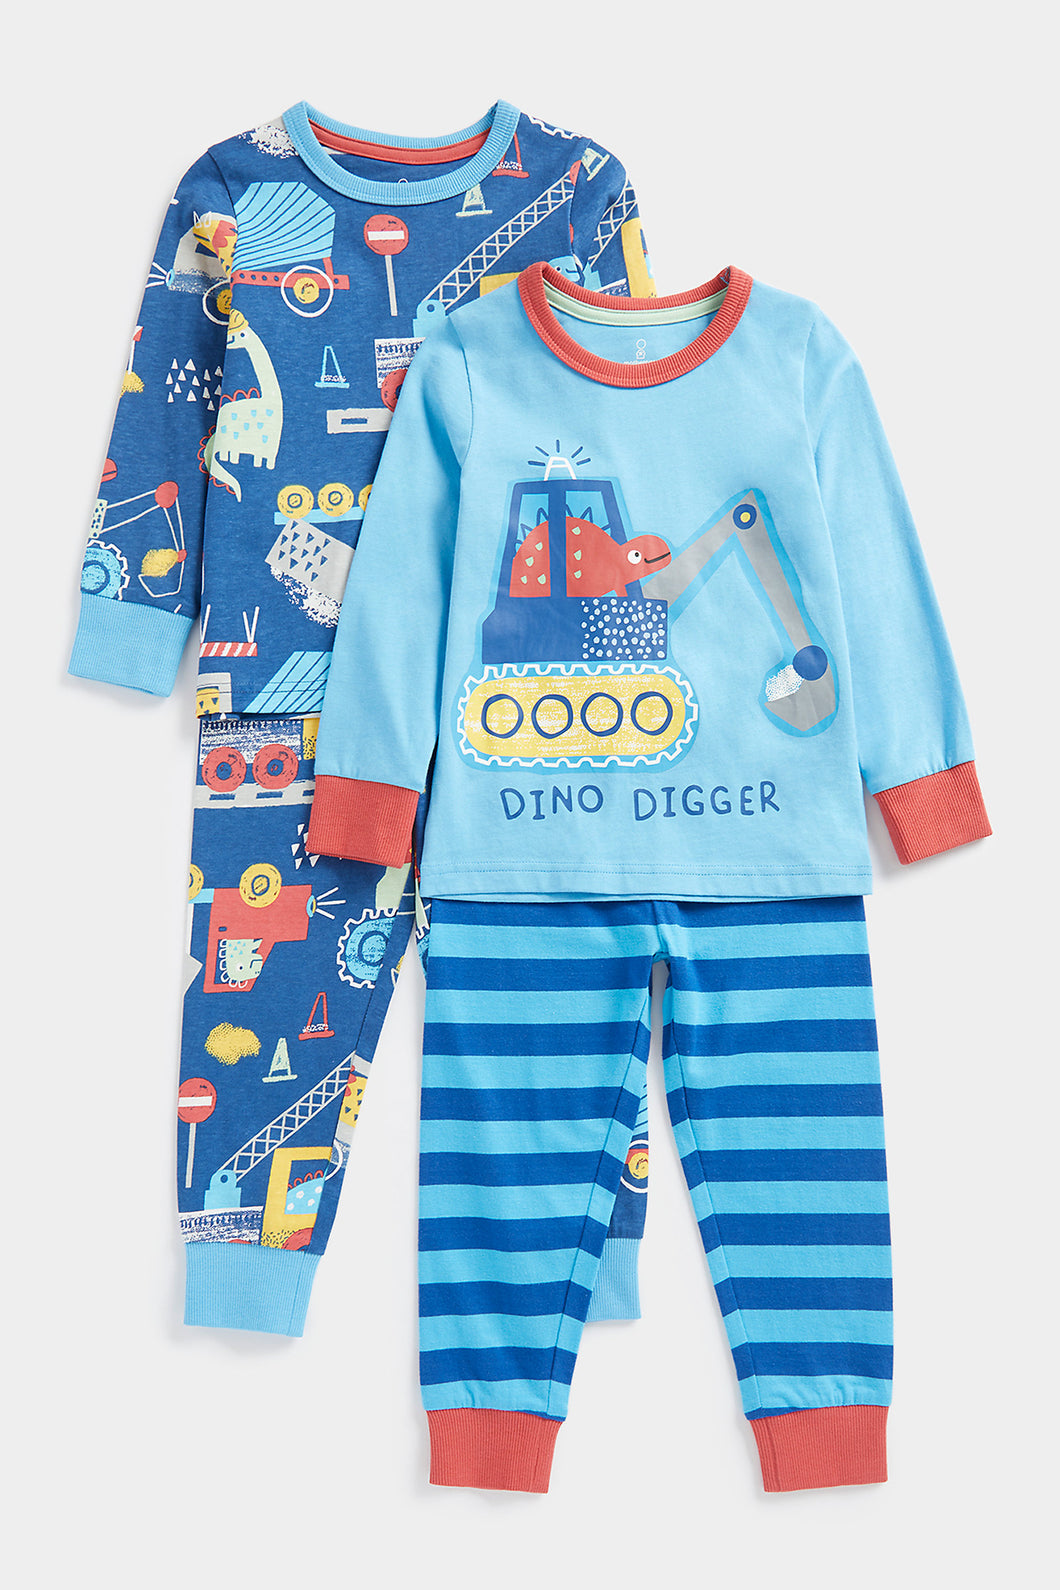 Mothercare Dinosaur Digger Pyjamas - 2 Pack